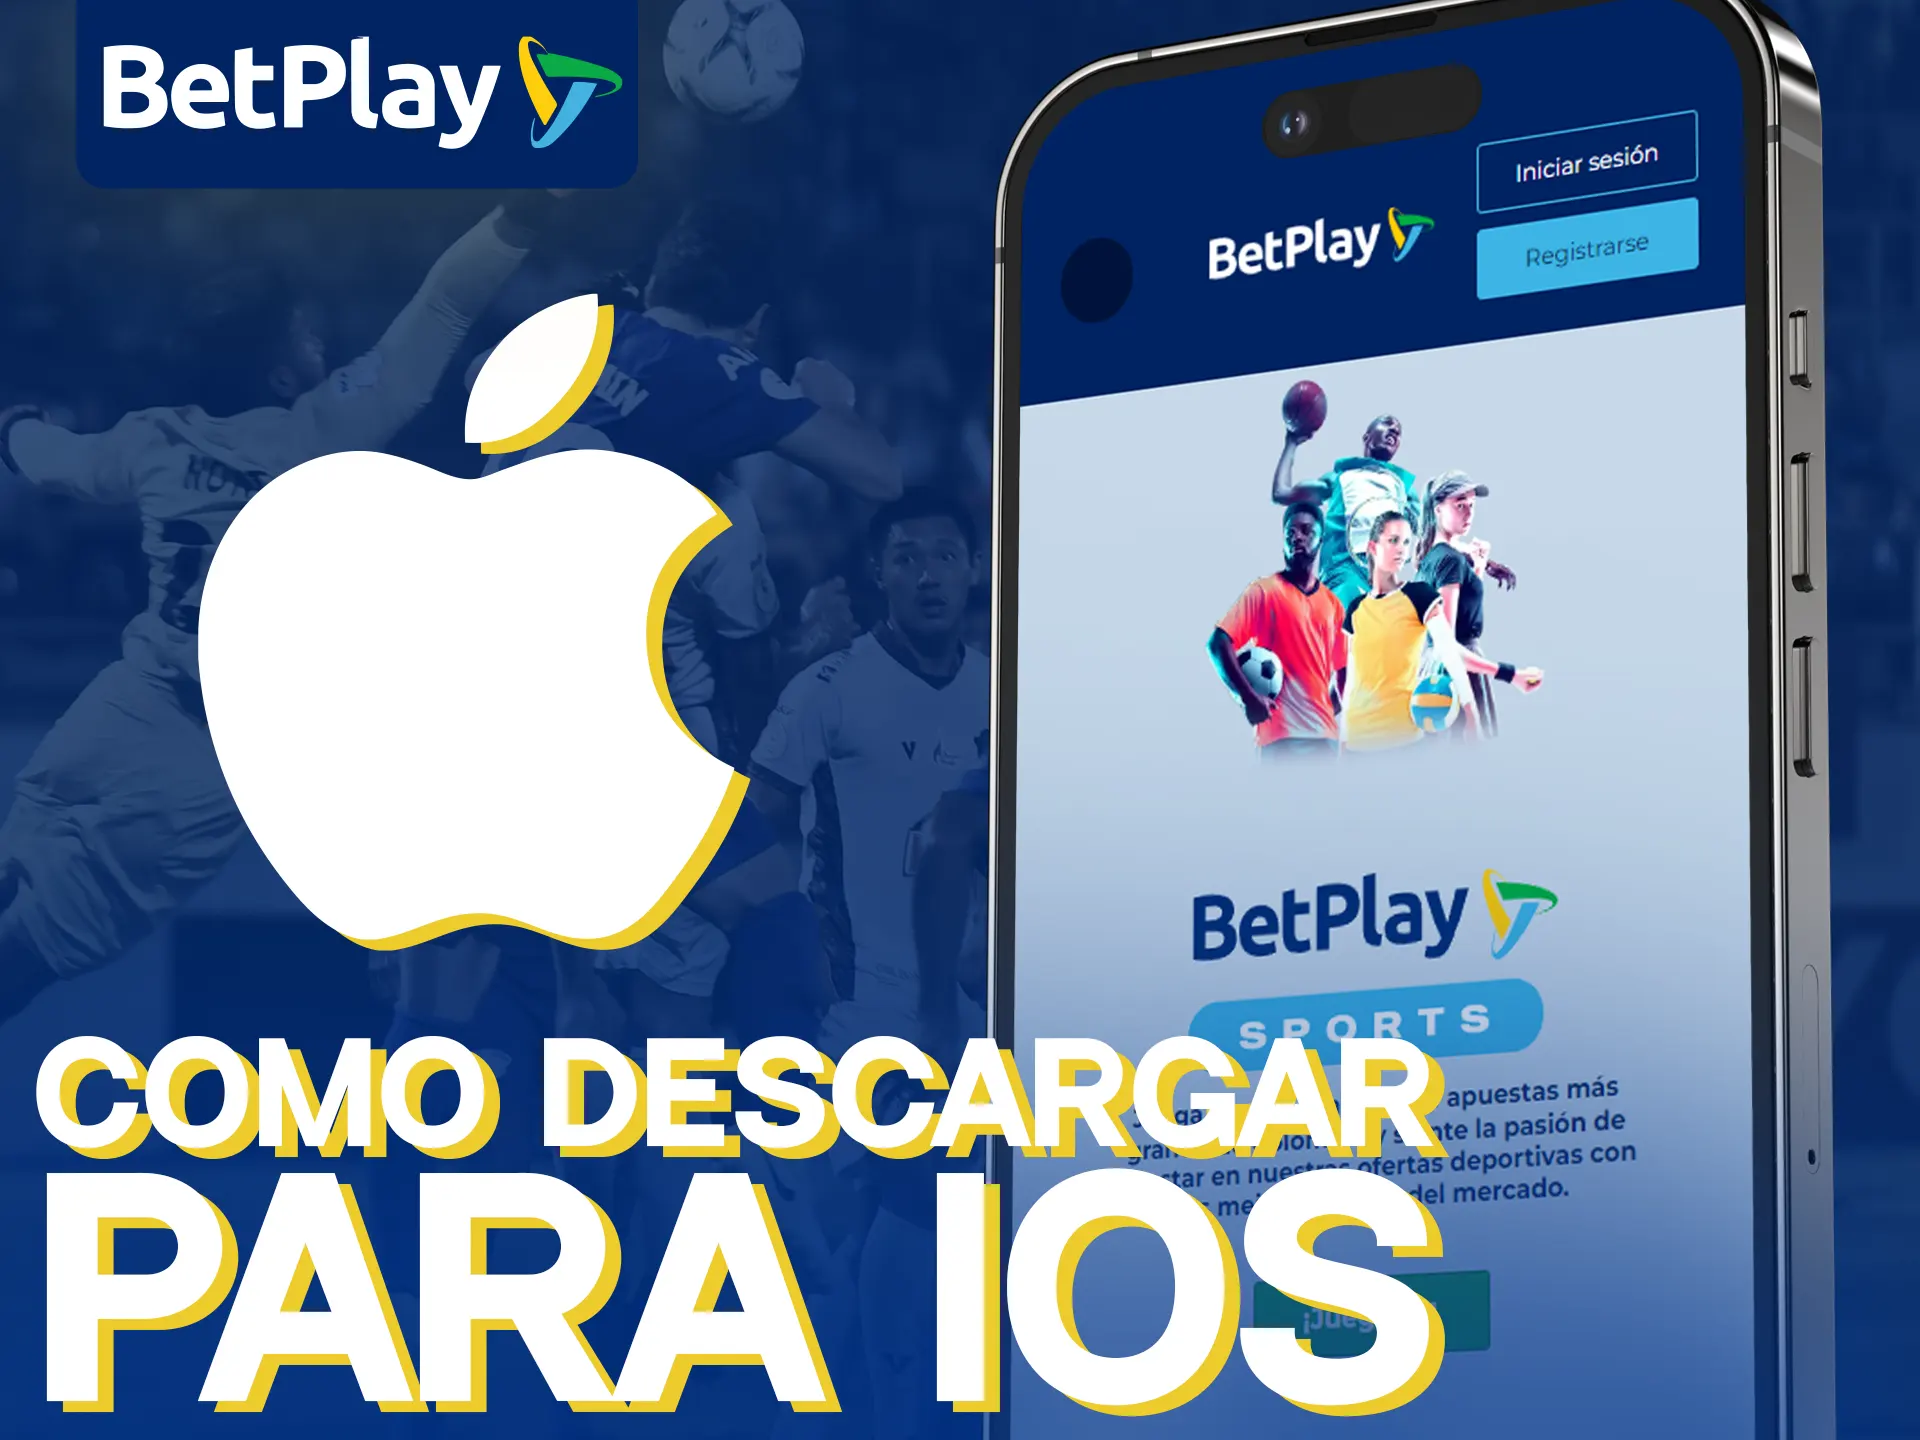 Betplay también ofrece la oportunidad de descargar la aplicación para iOS. Sigue los pasos.